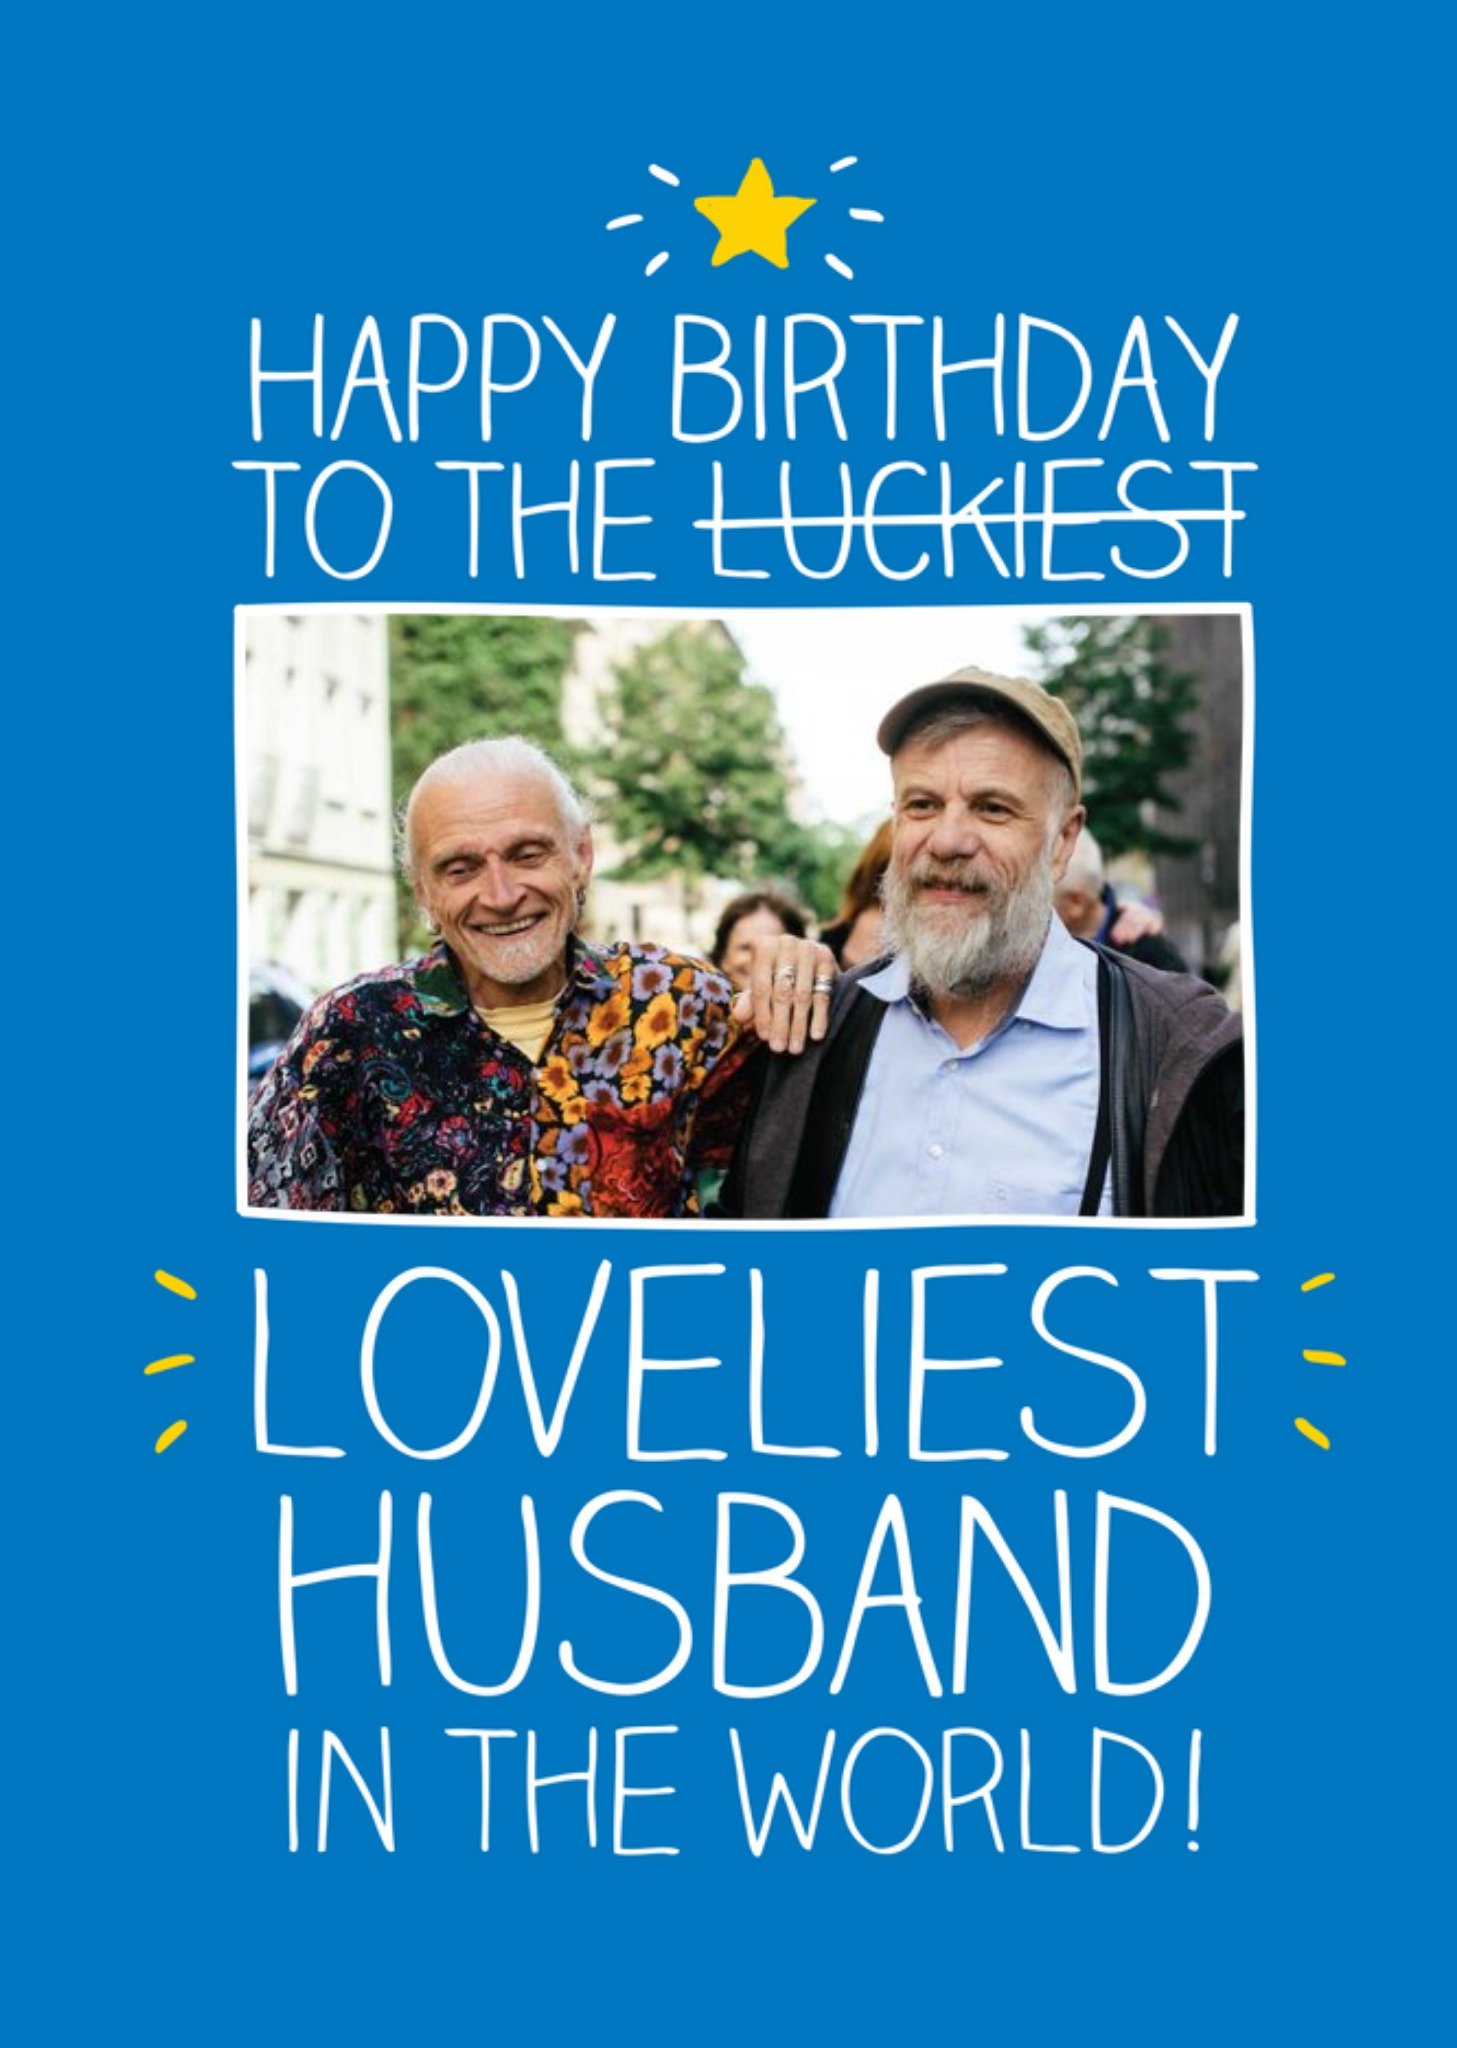 Happy Jackson Loveliest Husband Personalised Photo Upload Happy Birthday Card, Large